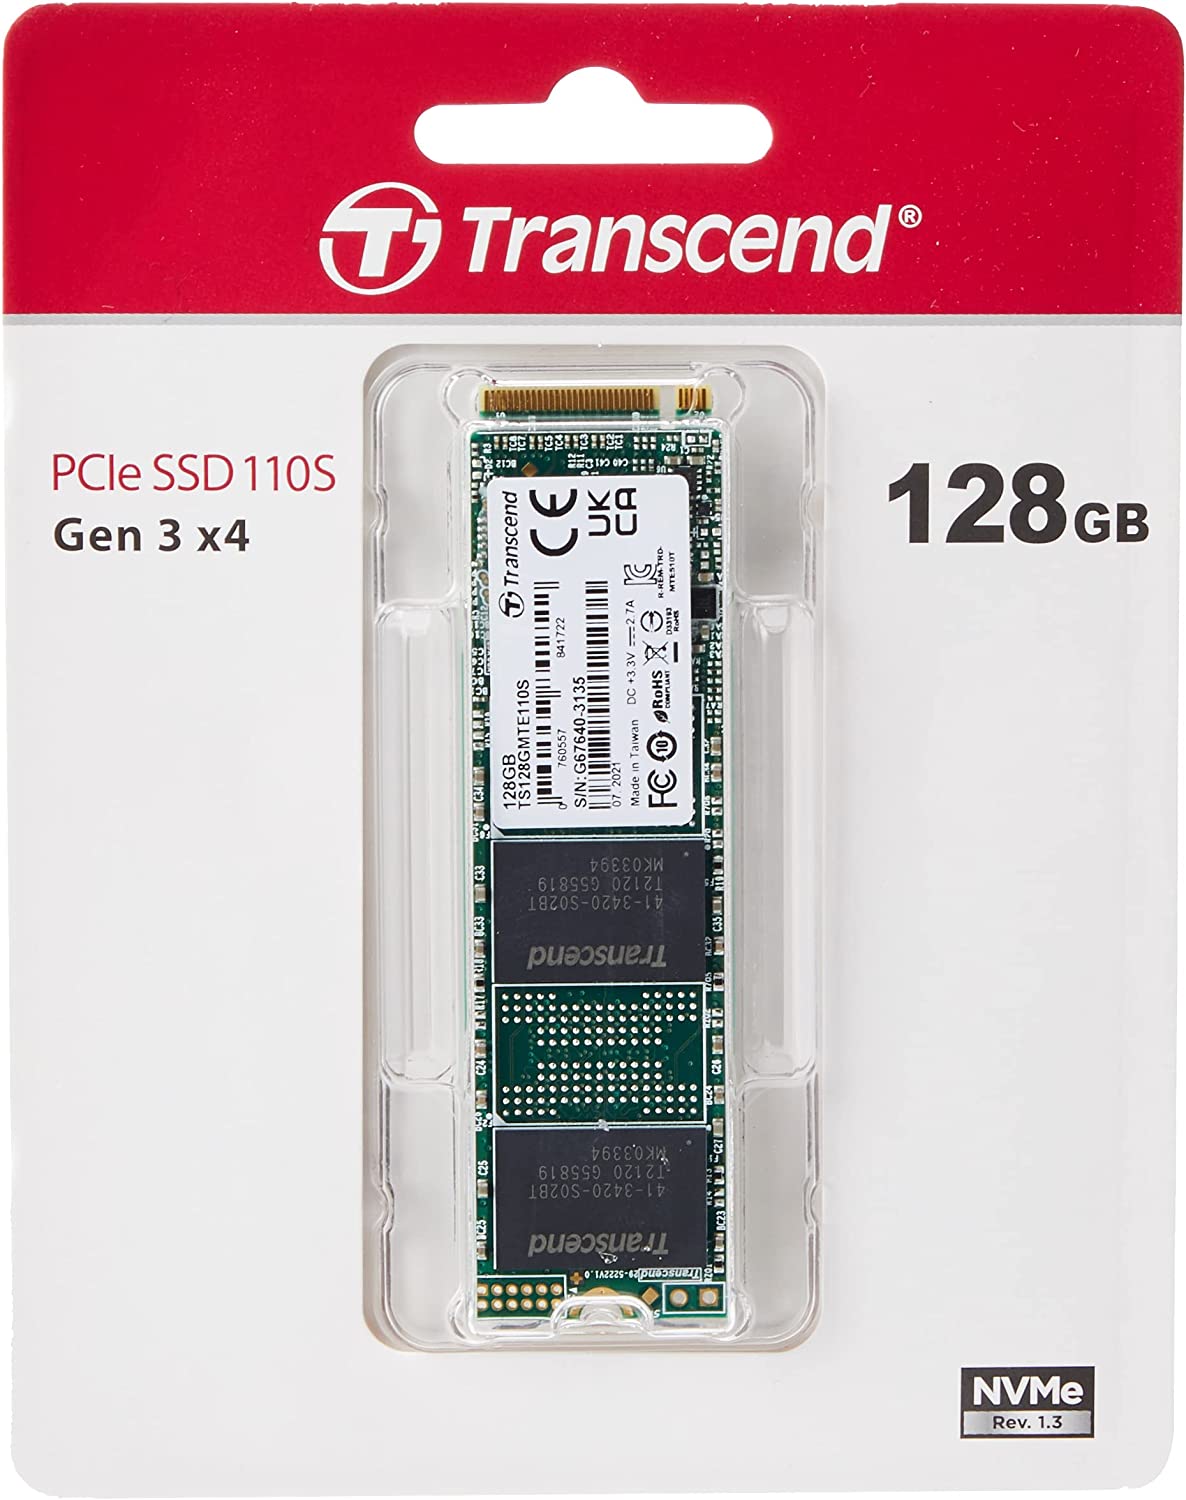 Transcend PCIe SSD 110S & 112S